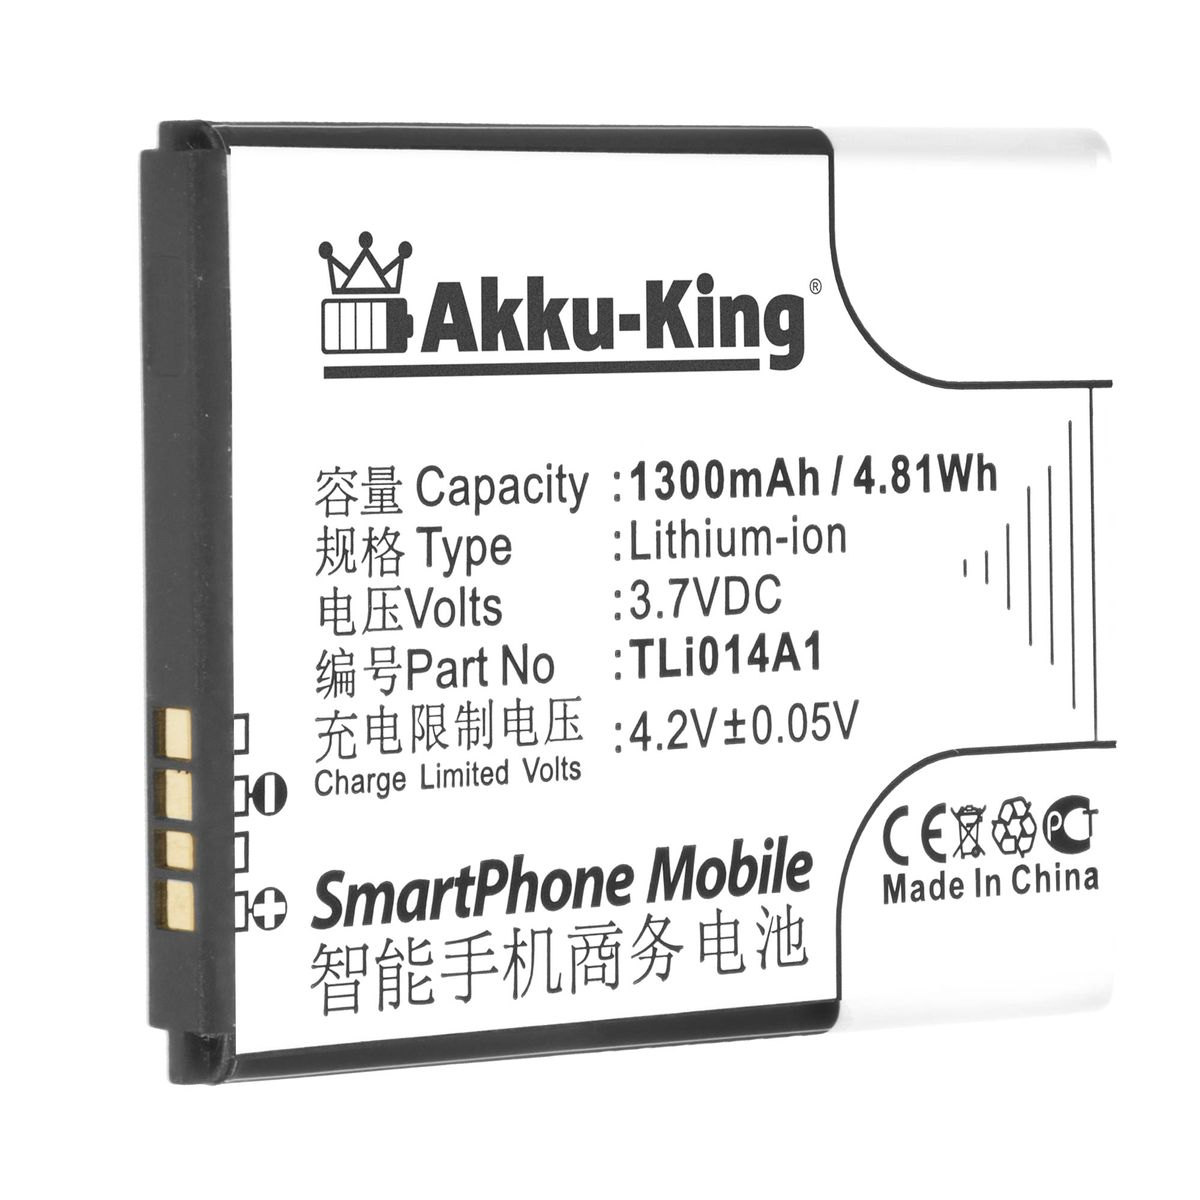 AKKU-KING Akku für Alcatet Tli014A1 Handy-Akku, 3.7 1300mAh Volt, Li-Ion